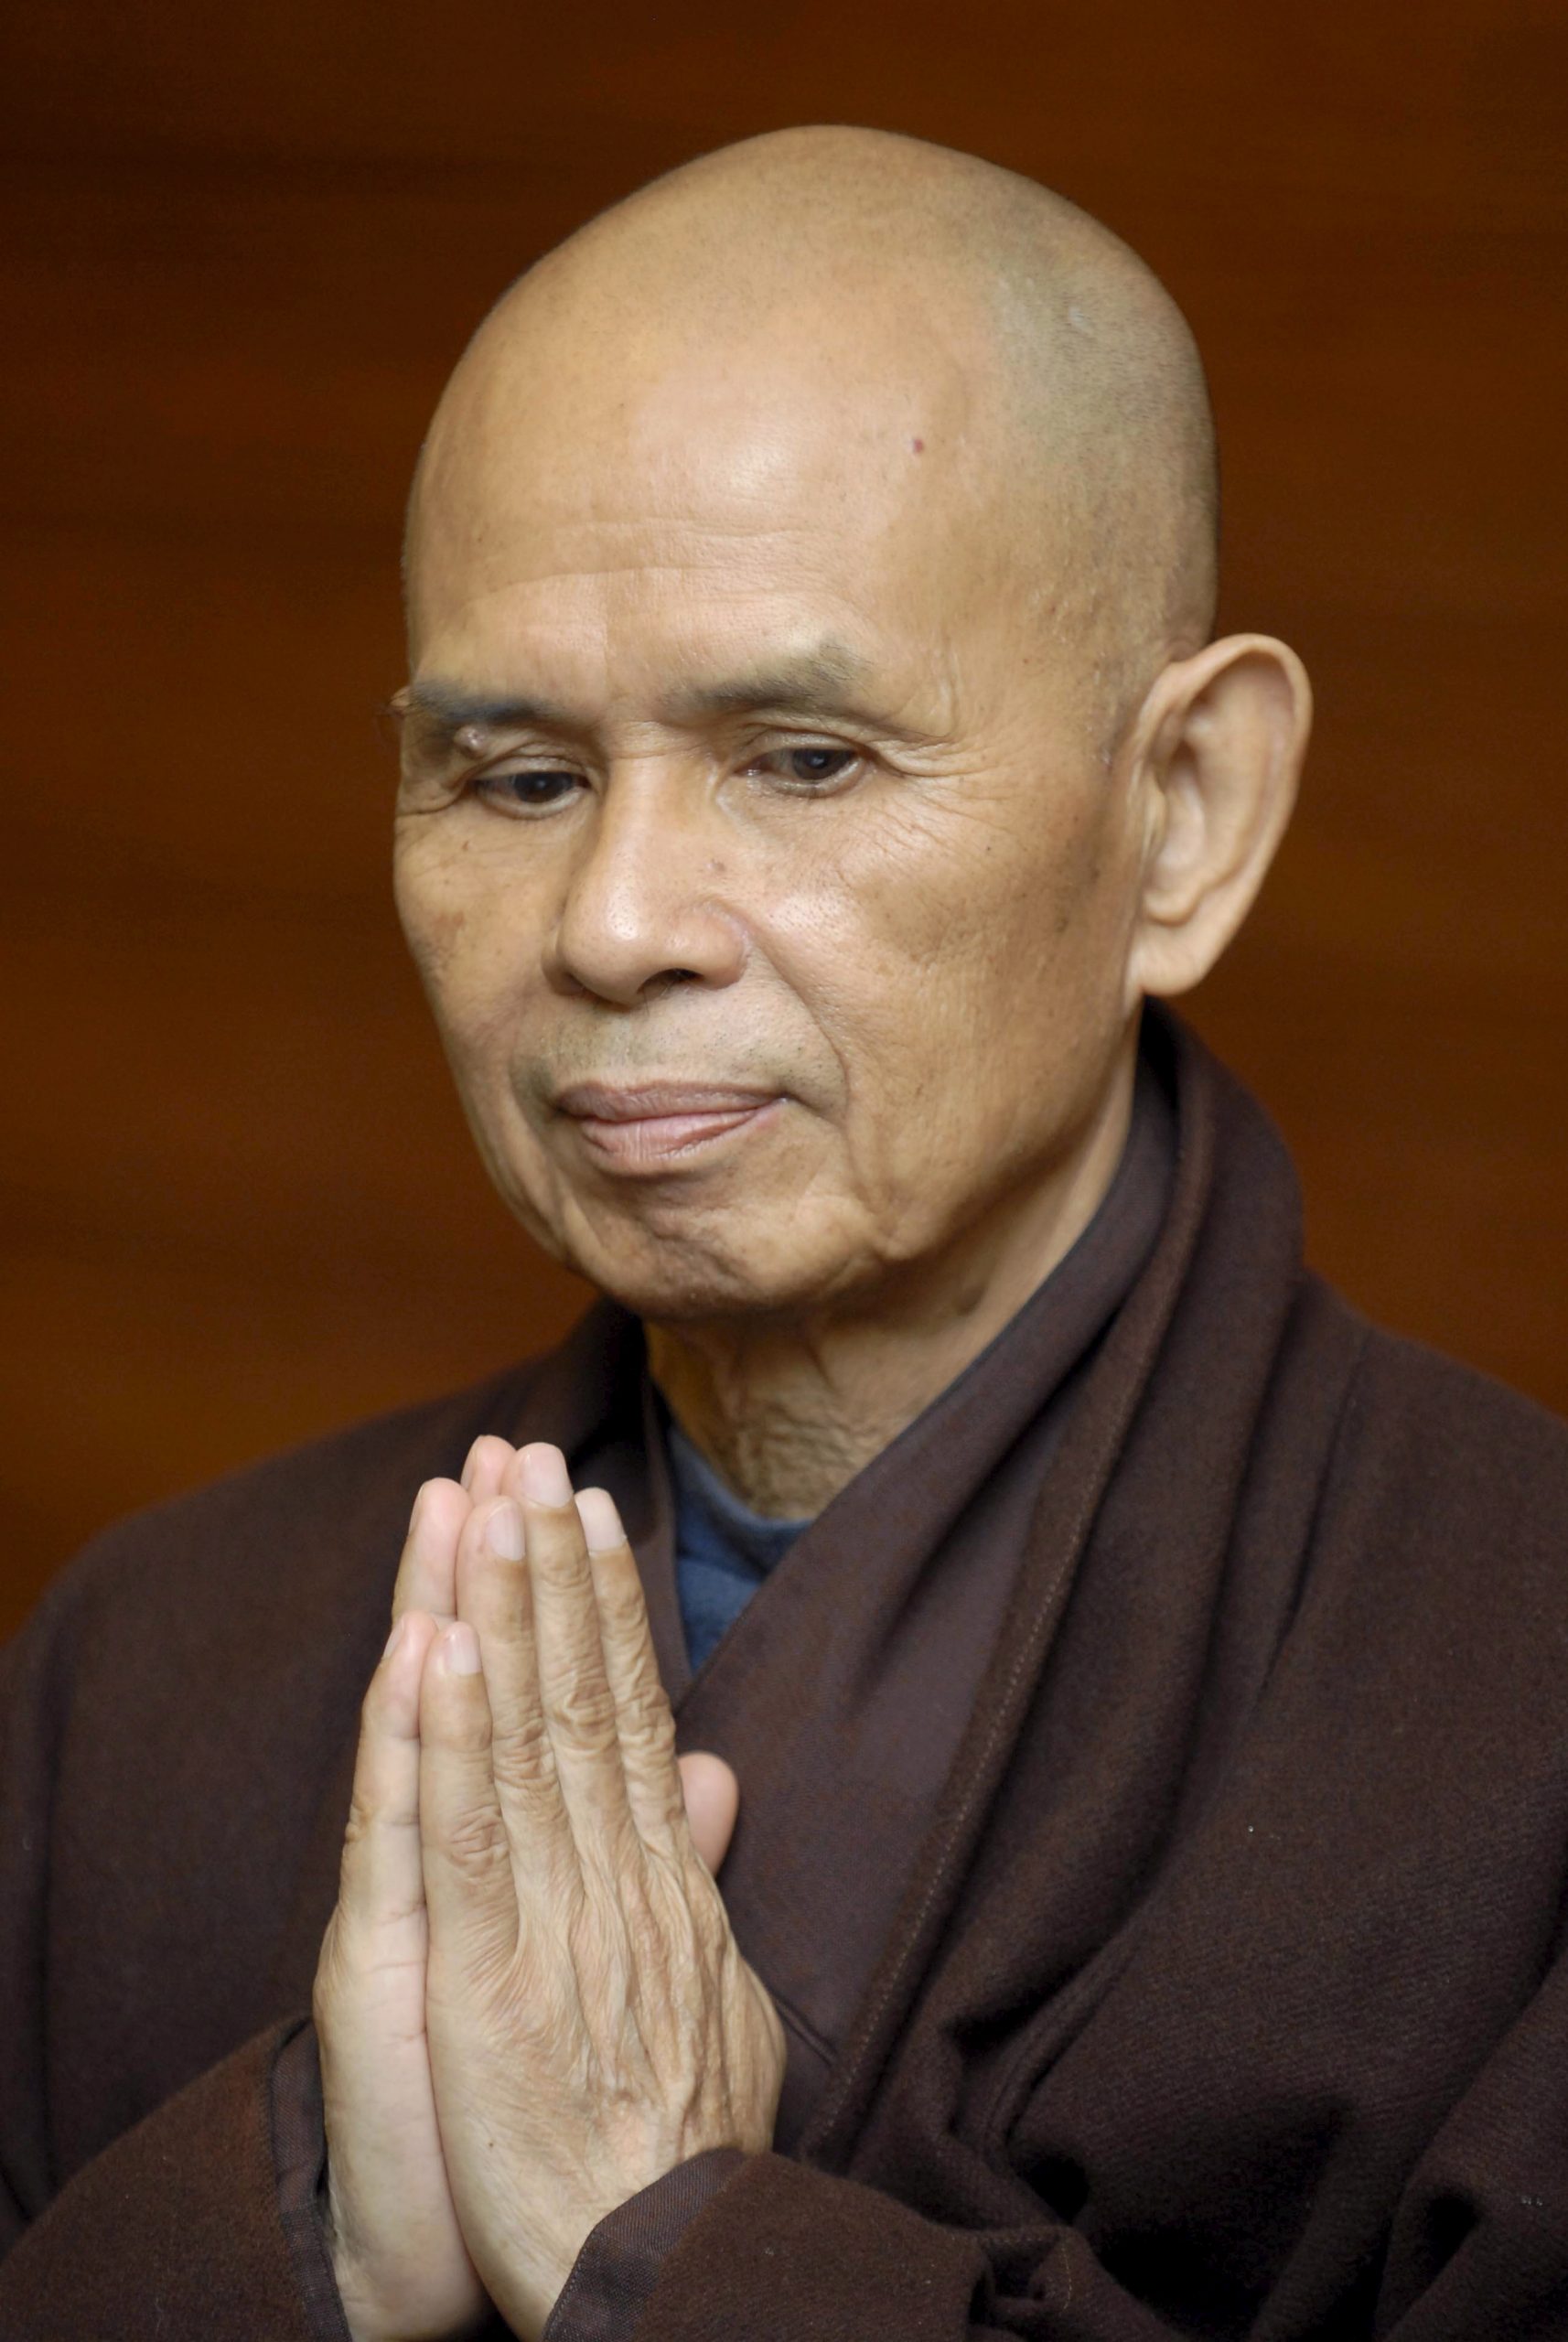 越南／被誉为“最具影响力高僧”　一行禅师圆寂享寿95岁